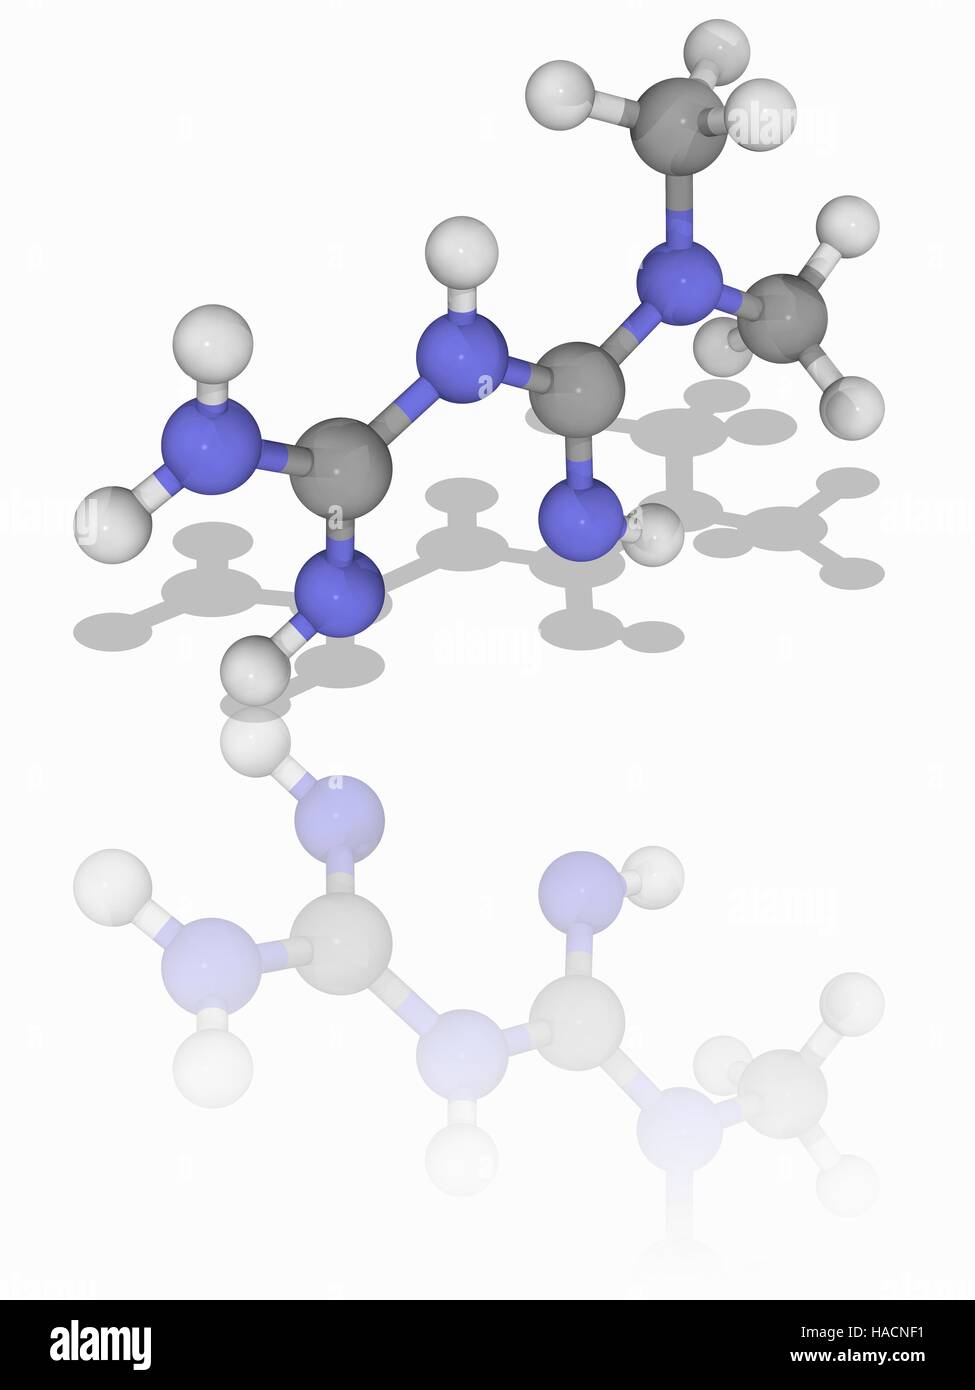 Metformin. Molekulares Modell des Medikaments Metformin (C4. H11. N5), zur Behandlung von Typ-2-Diabetes bei übergewichtigen und adipösen Patienten und Patienten mit normaler Nierenfunktion. Atome als Kugeln dargestellt werden und sind farblich gekennzeichnet: Kohlenstoff (grau) und Wasserstoff (weiß). Abbildung. Stockfoto